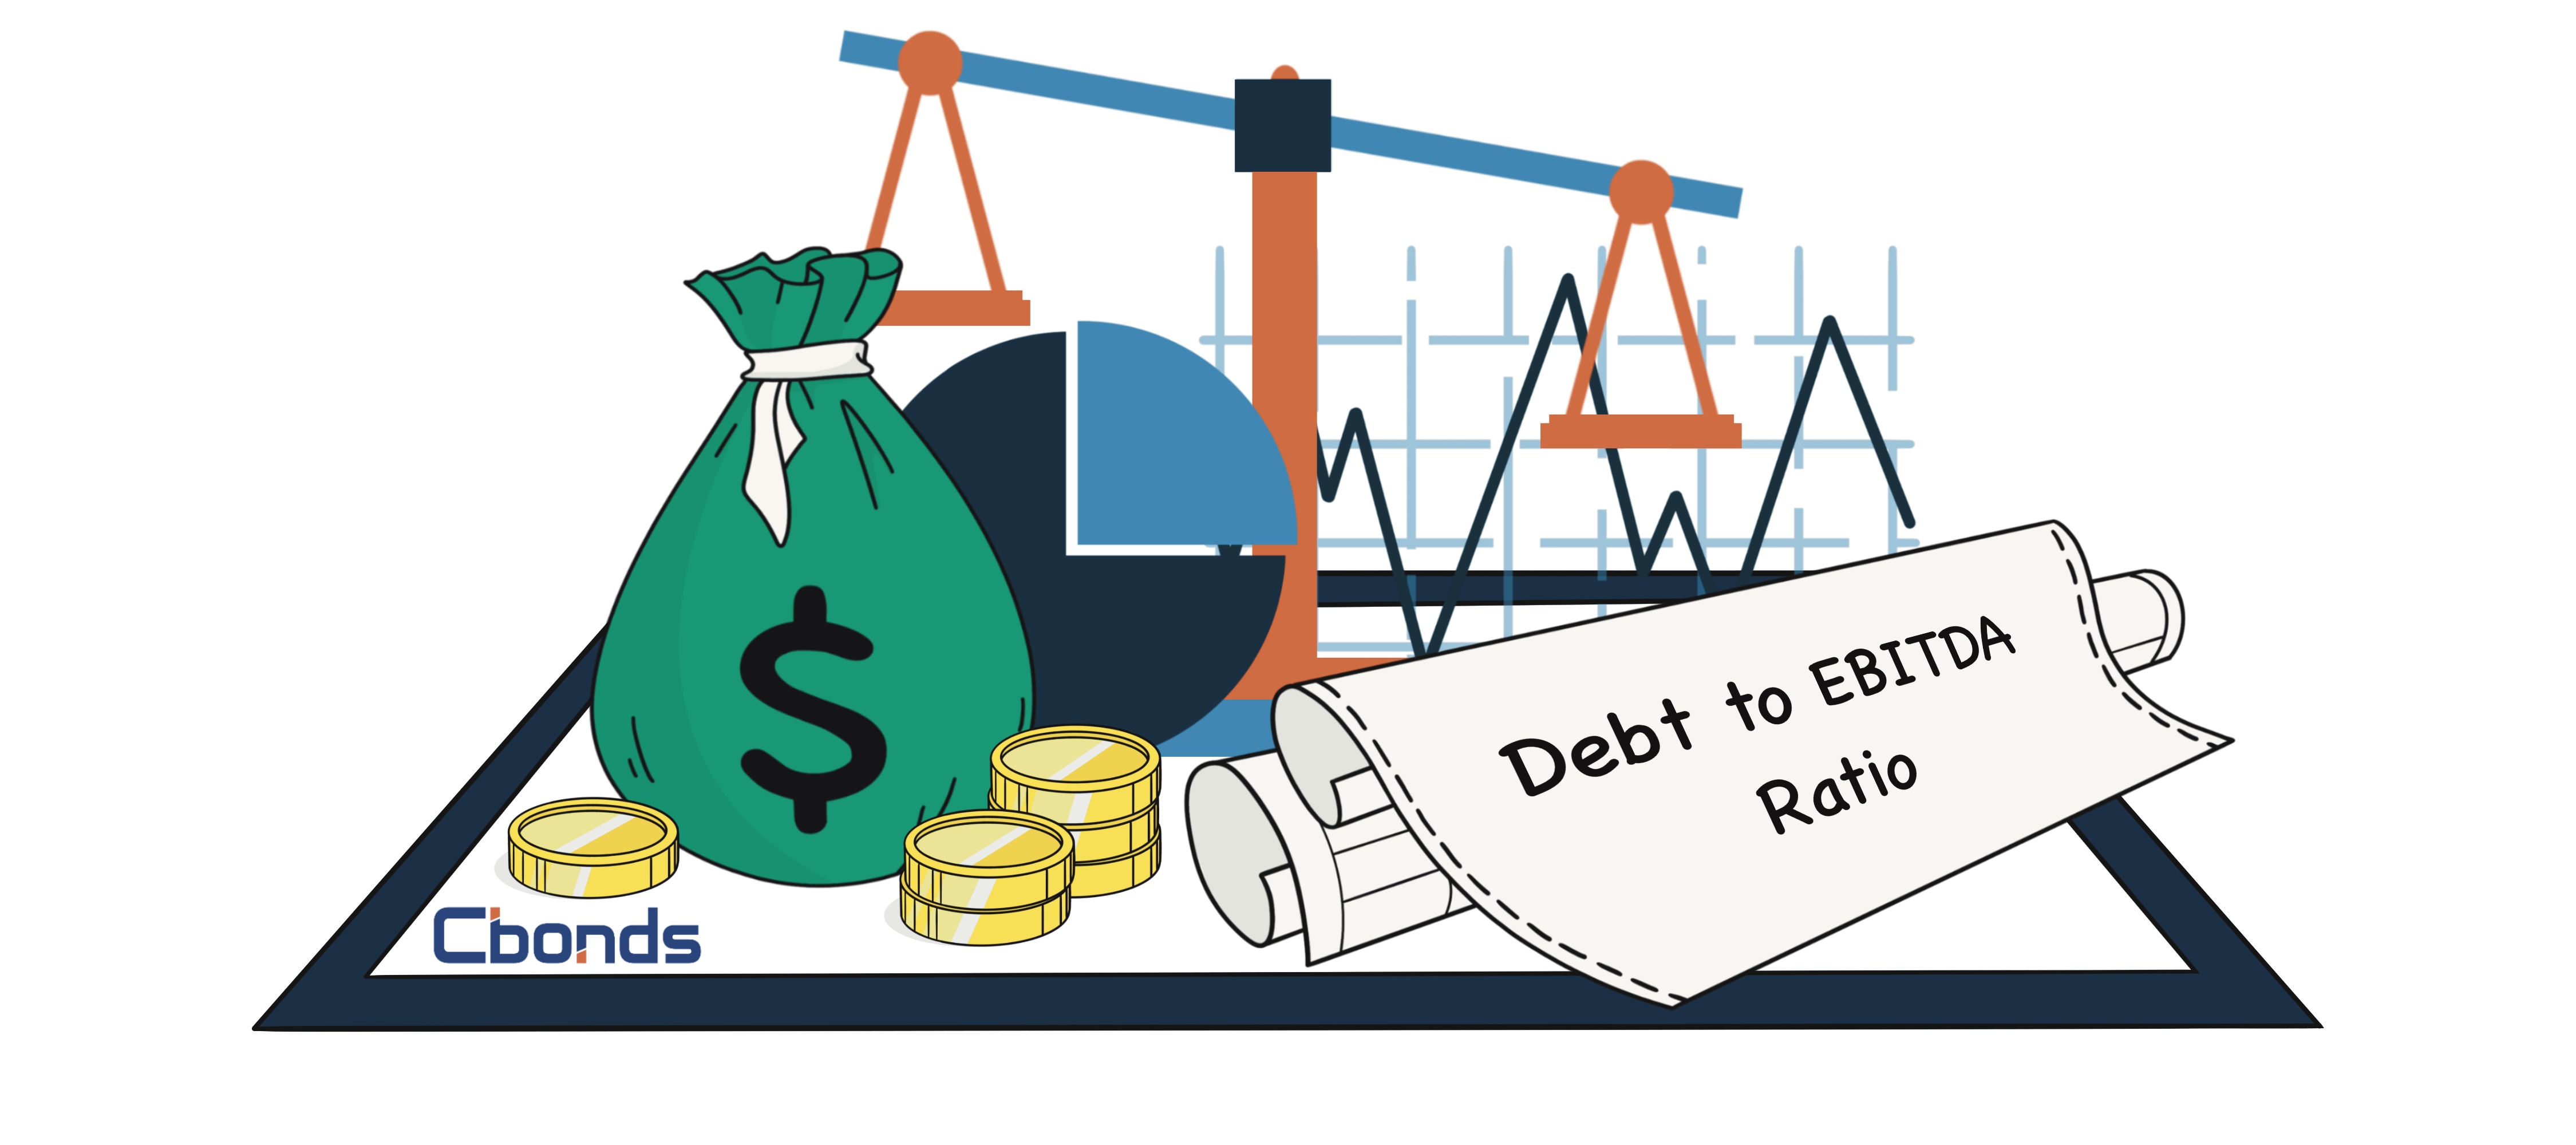 Debt to EBITDA Ratio